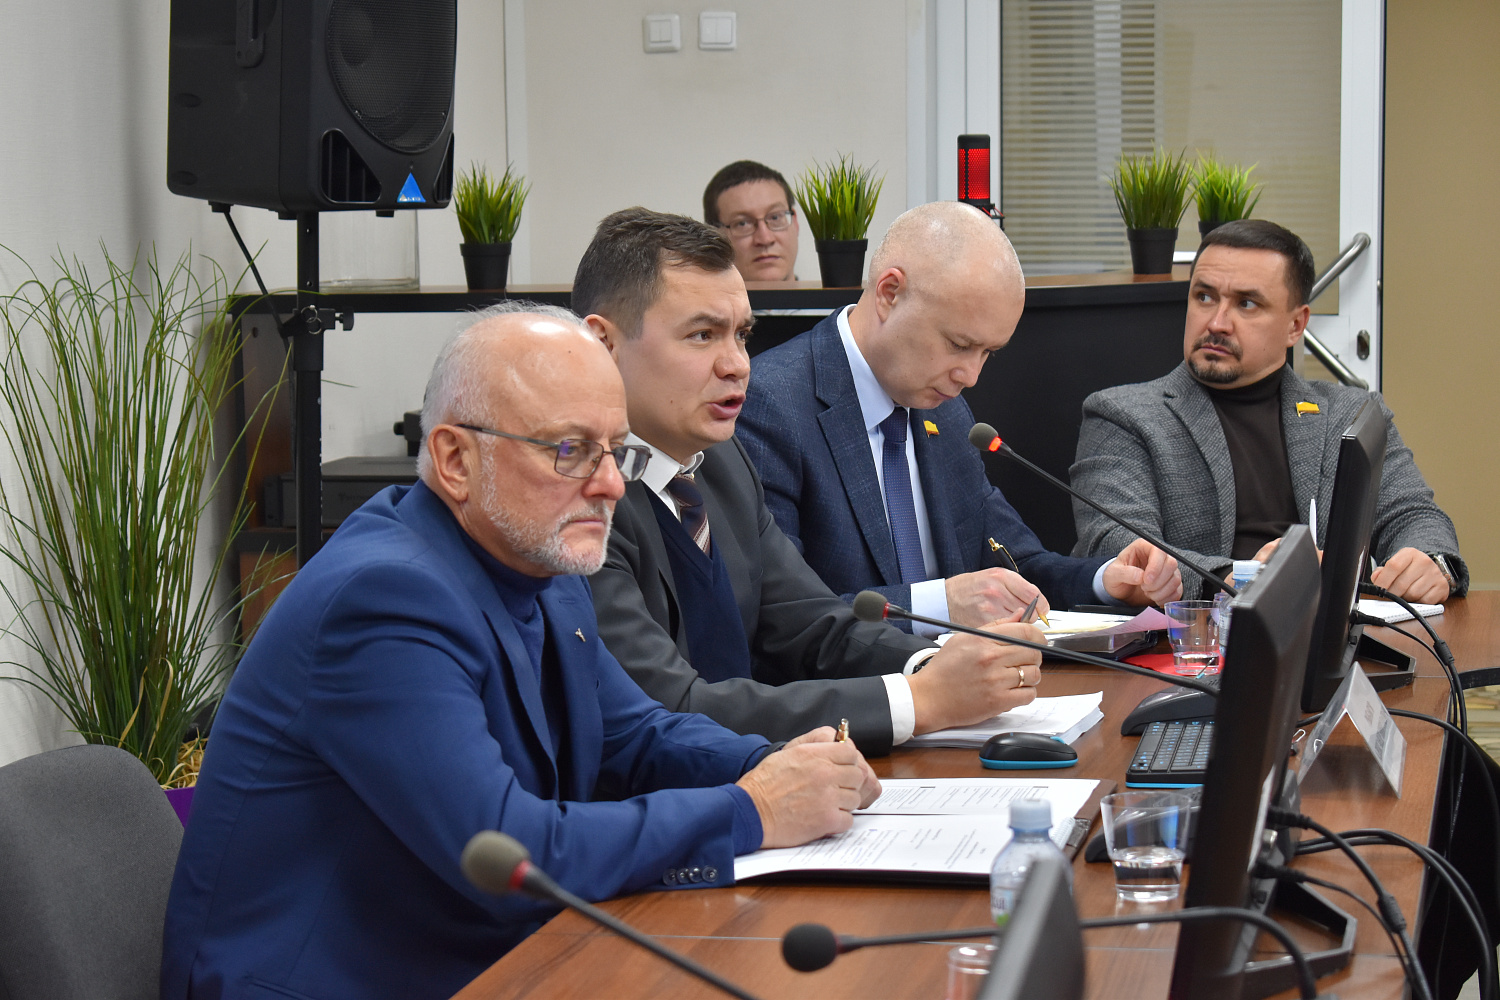 9 февраля 2023 г. в Торгово-промышленной палате Чувашской Республики состоялось расширенное заседание Комитета ТПП Чувашской Республики по развитию малого и среднего предпринимательства